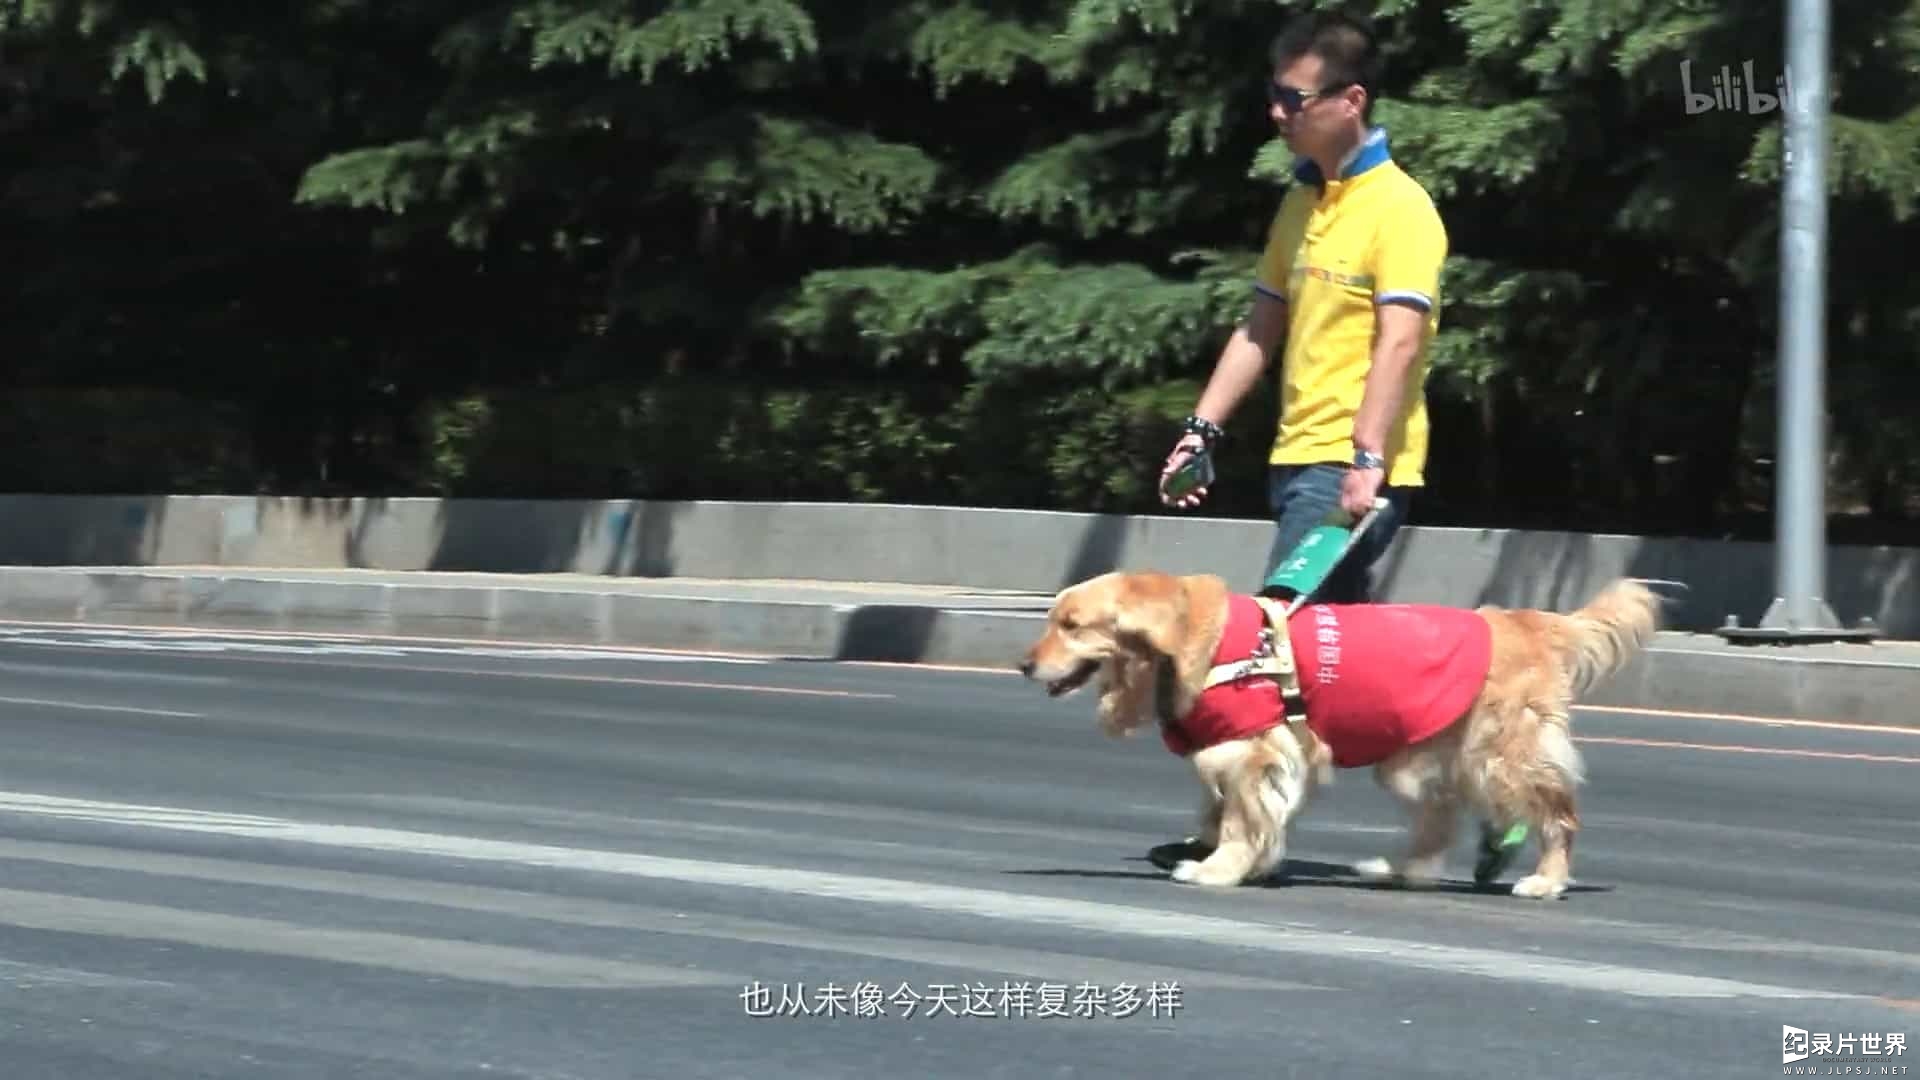 宠物纪录片/萌宠系列《狗狗在中国 Dogs in China》全5集 国语中字